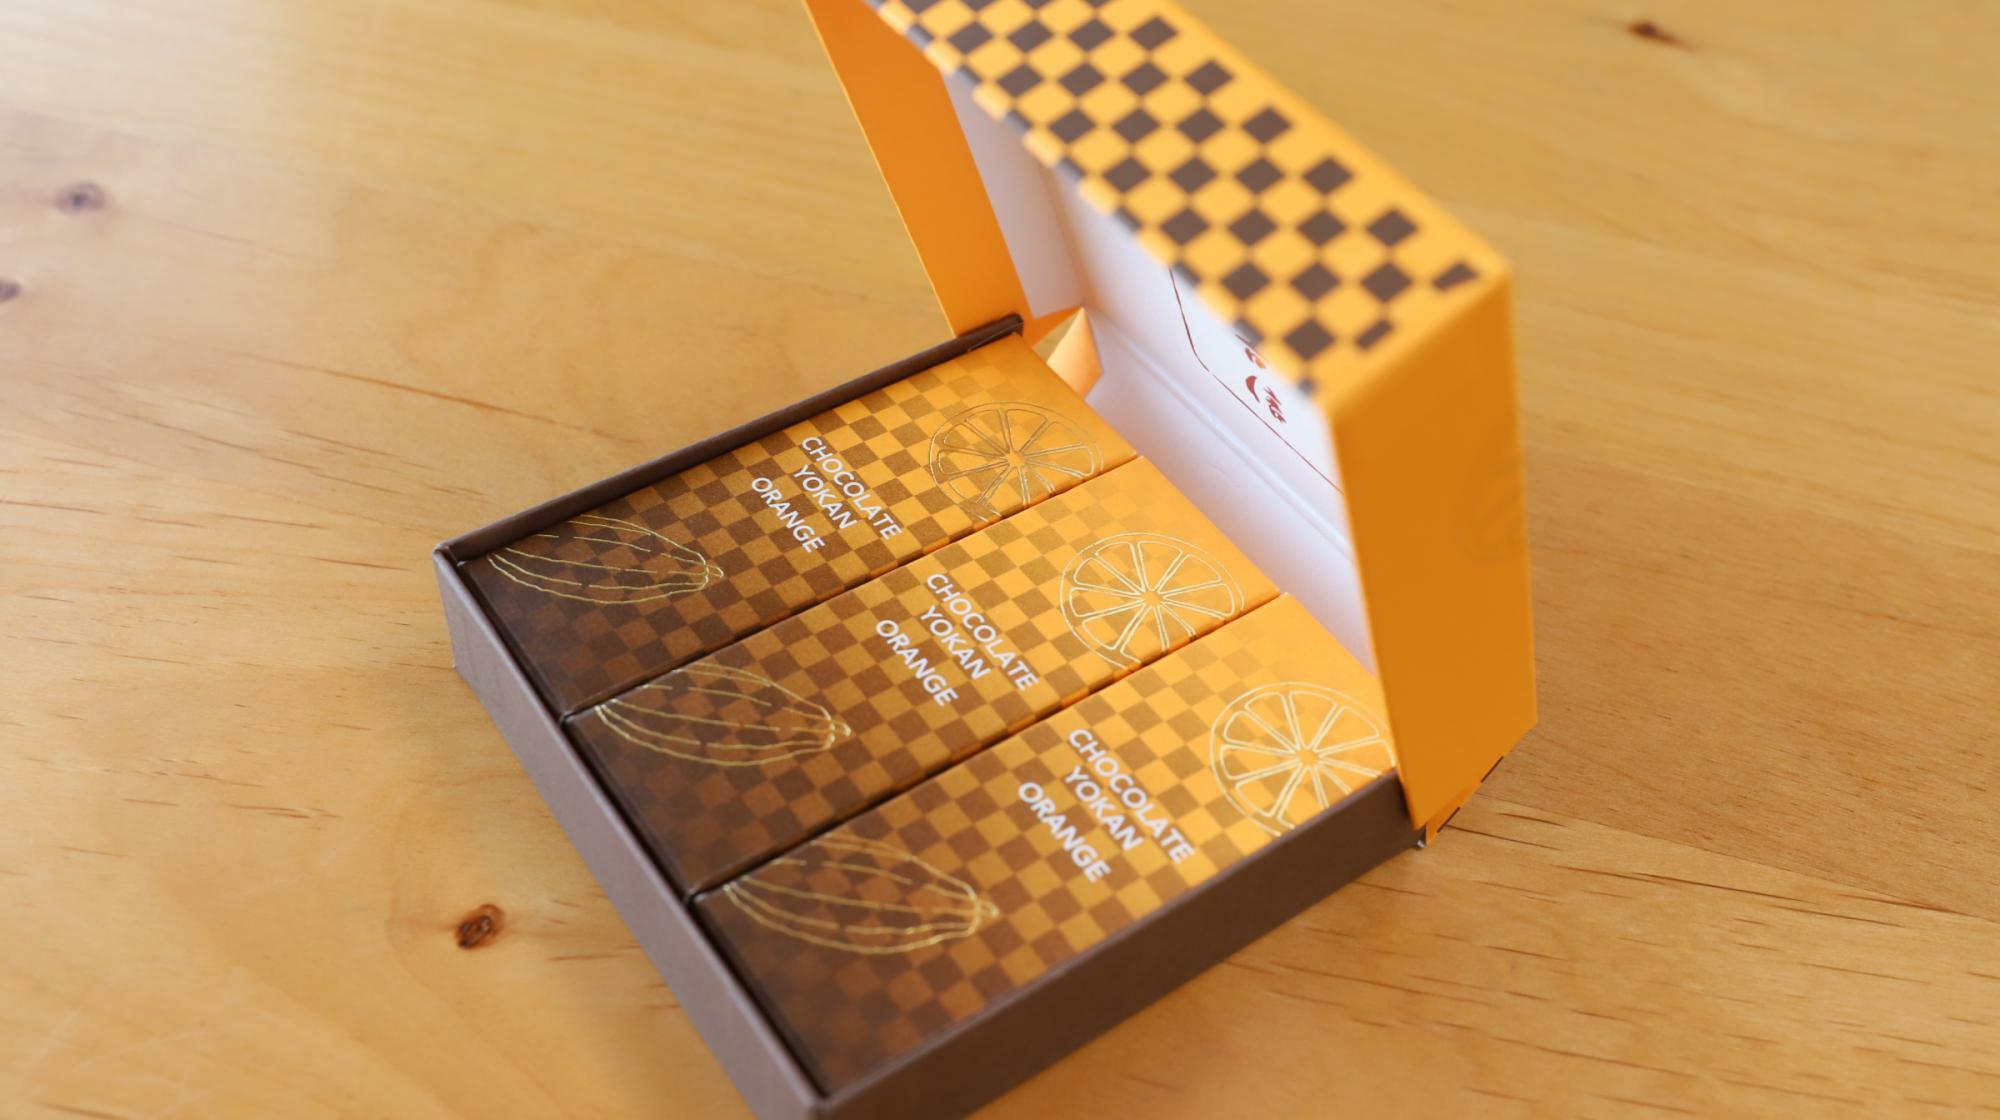 オレンジと茶色の市松模様のパッケージがお洒落な鶴屋吉信のチョコレート羊羹 オレンジ